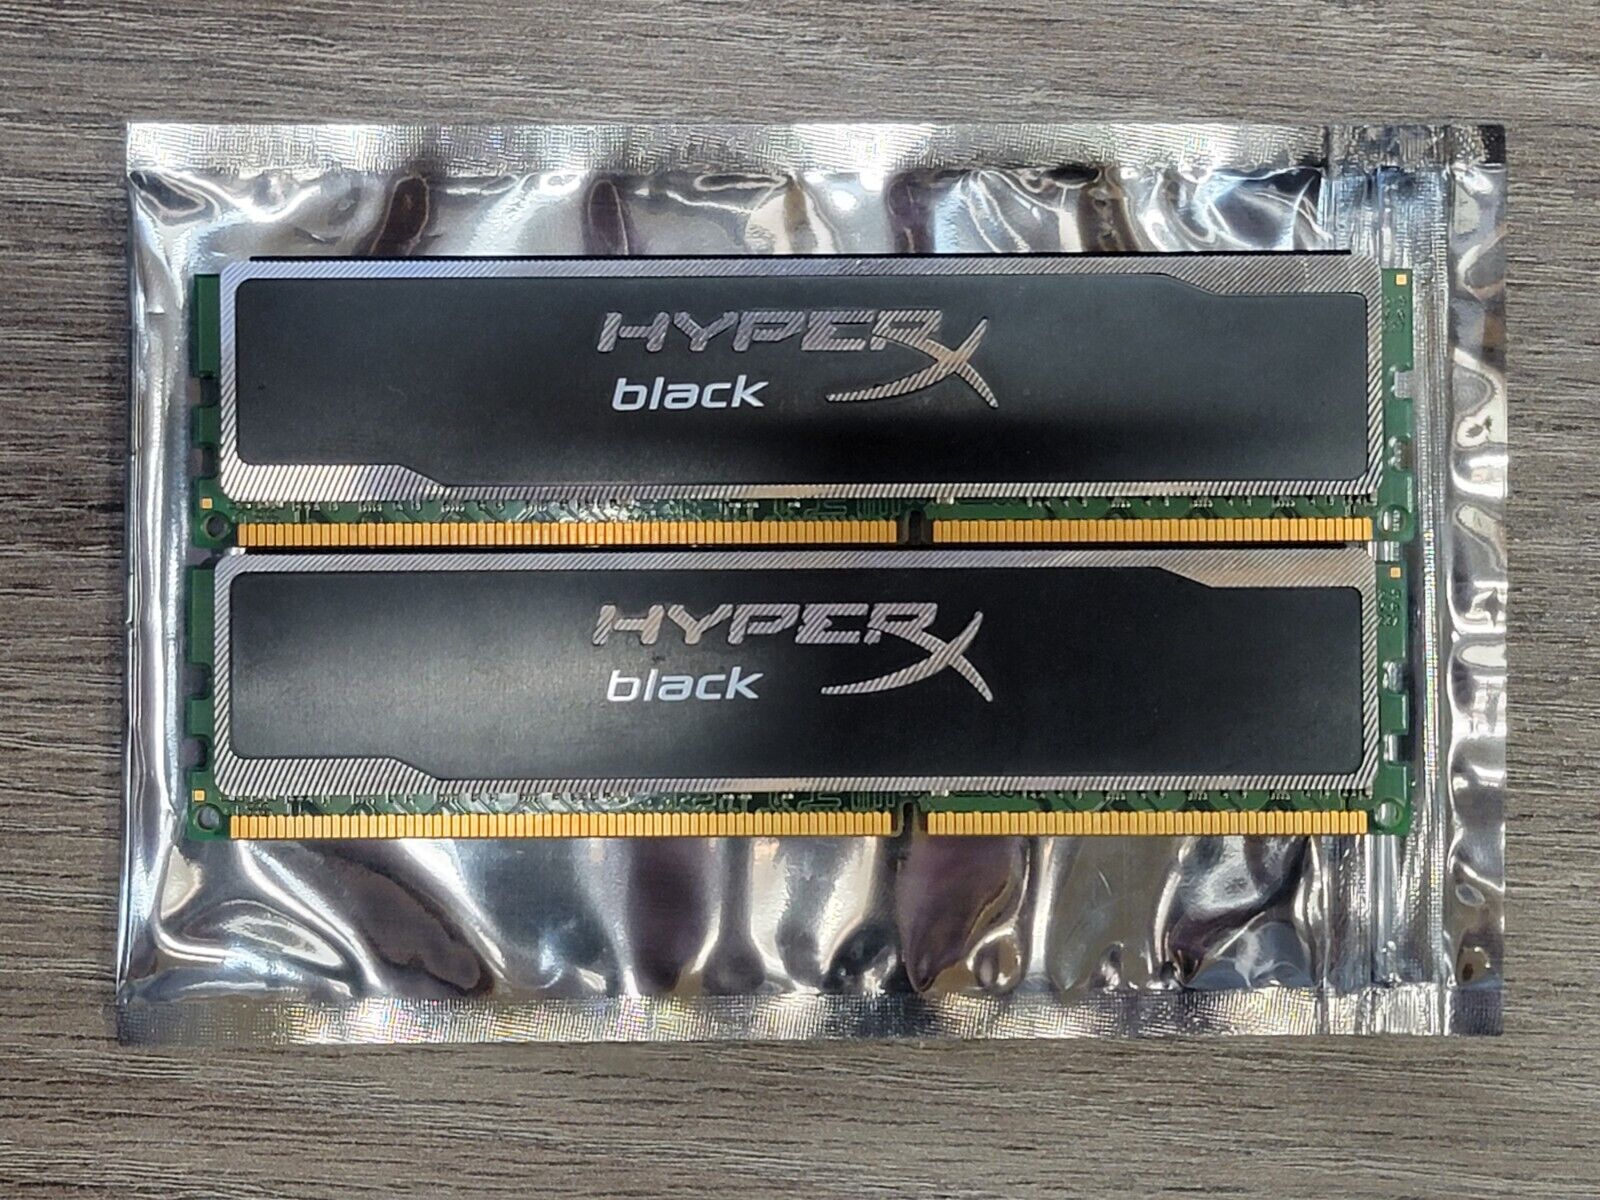 KINGSTON HYPER X 16GB (2X8) DDR3 1600MHz PC3-12800 1.5V KHX16C10B1BK2 Tested ۝